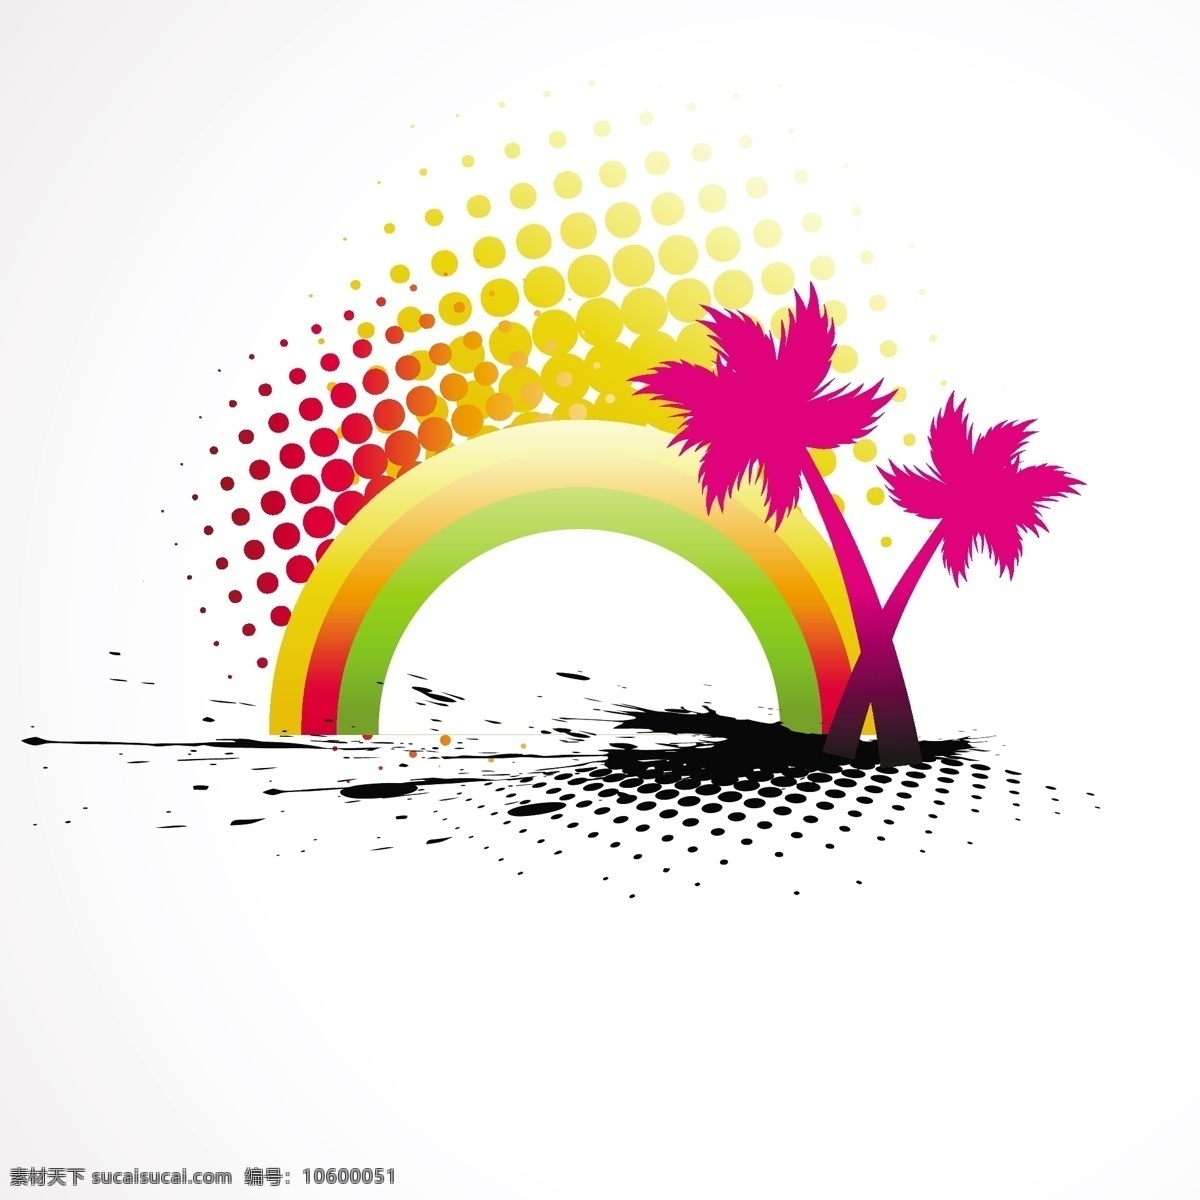 现代 夏季 背景 树 抽象的 夏天 蓝 沙滩 艺术 彩虹 节日丰富多彩 剪影 色调 棕榈 装饰 美丽的 抽象的形状 天堂 剪贴画